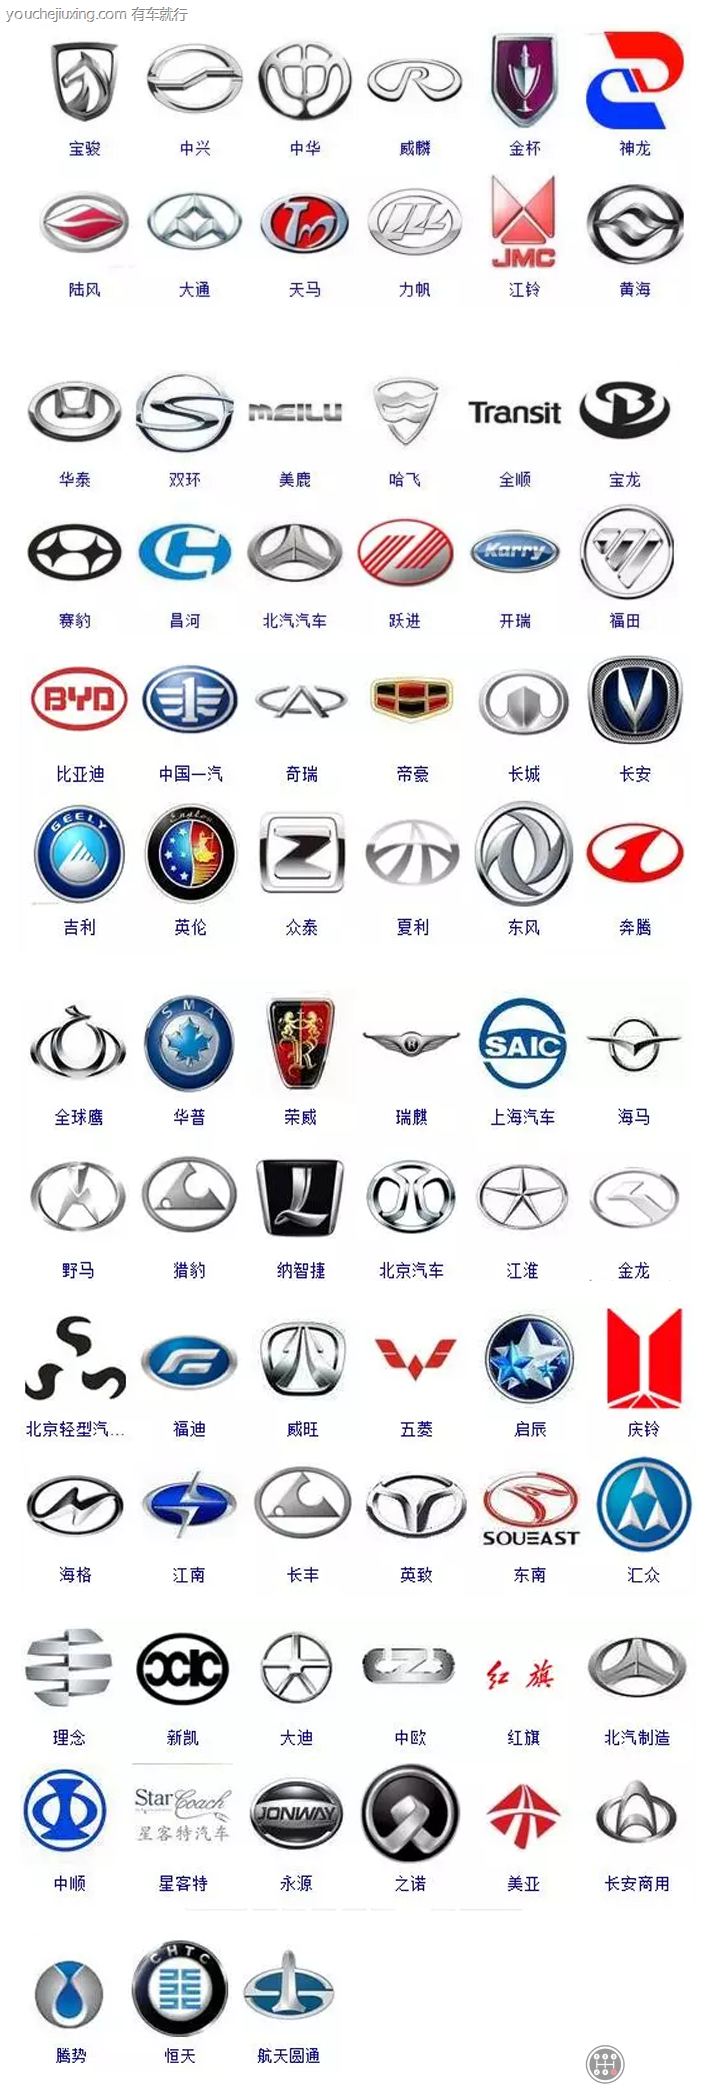 了国内常见的汽车标志图片大家;包括国内和国外汽车品牌,以及轿车车标